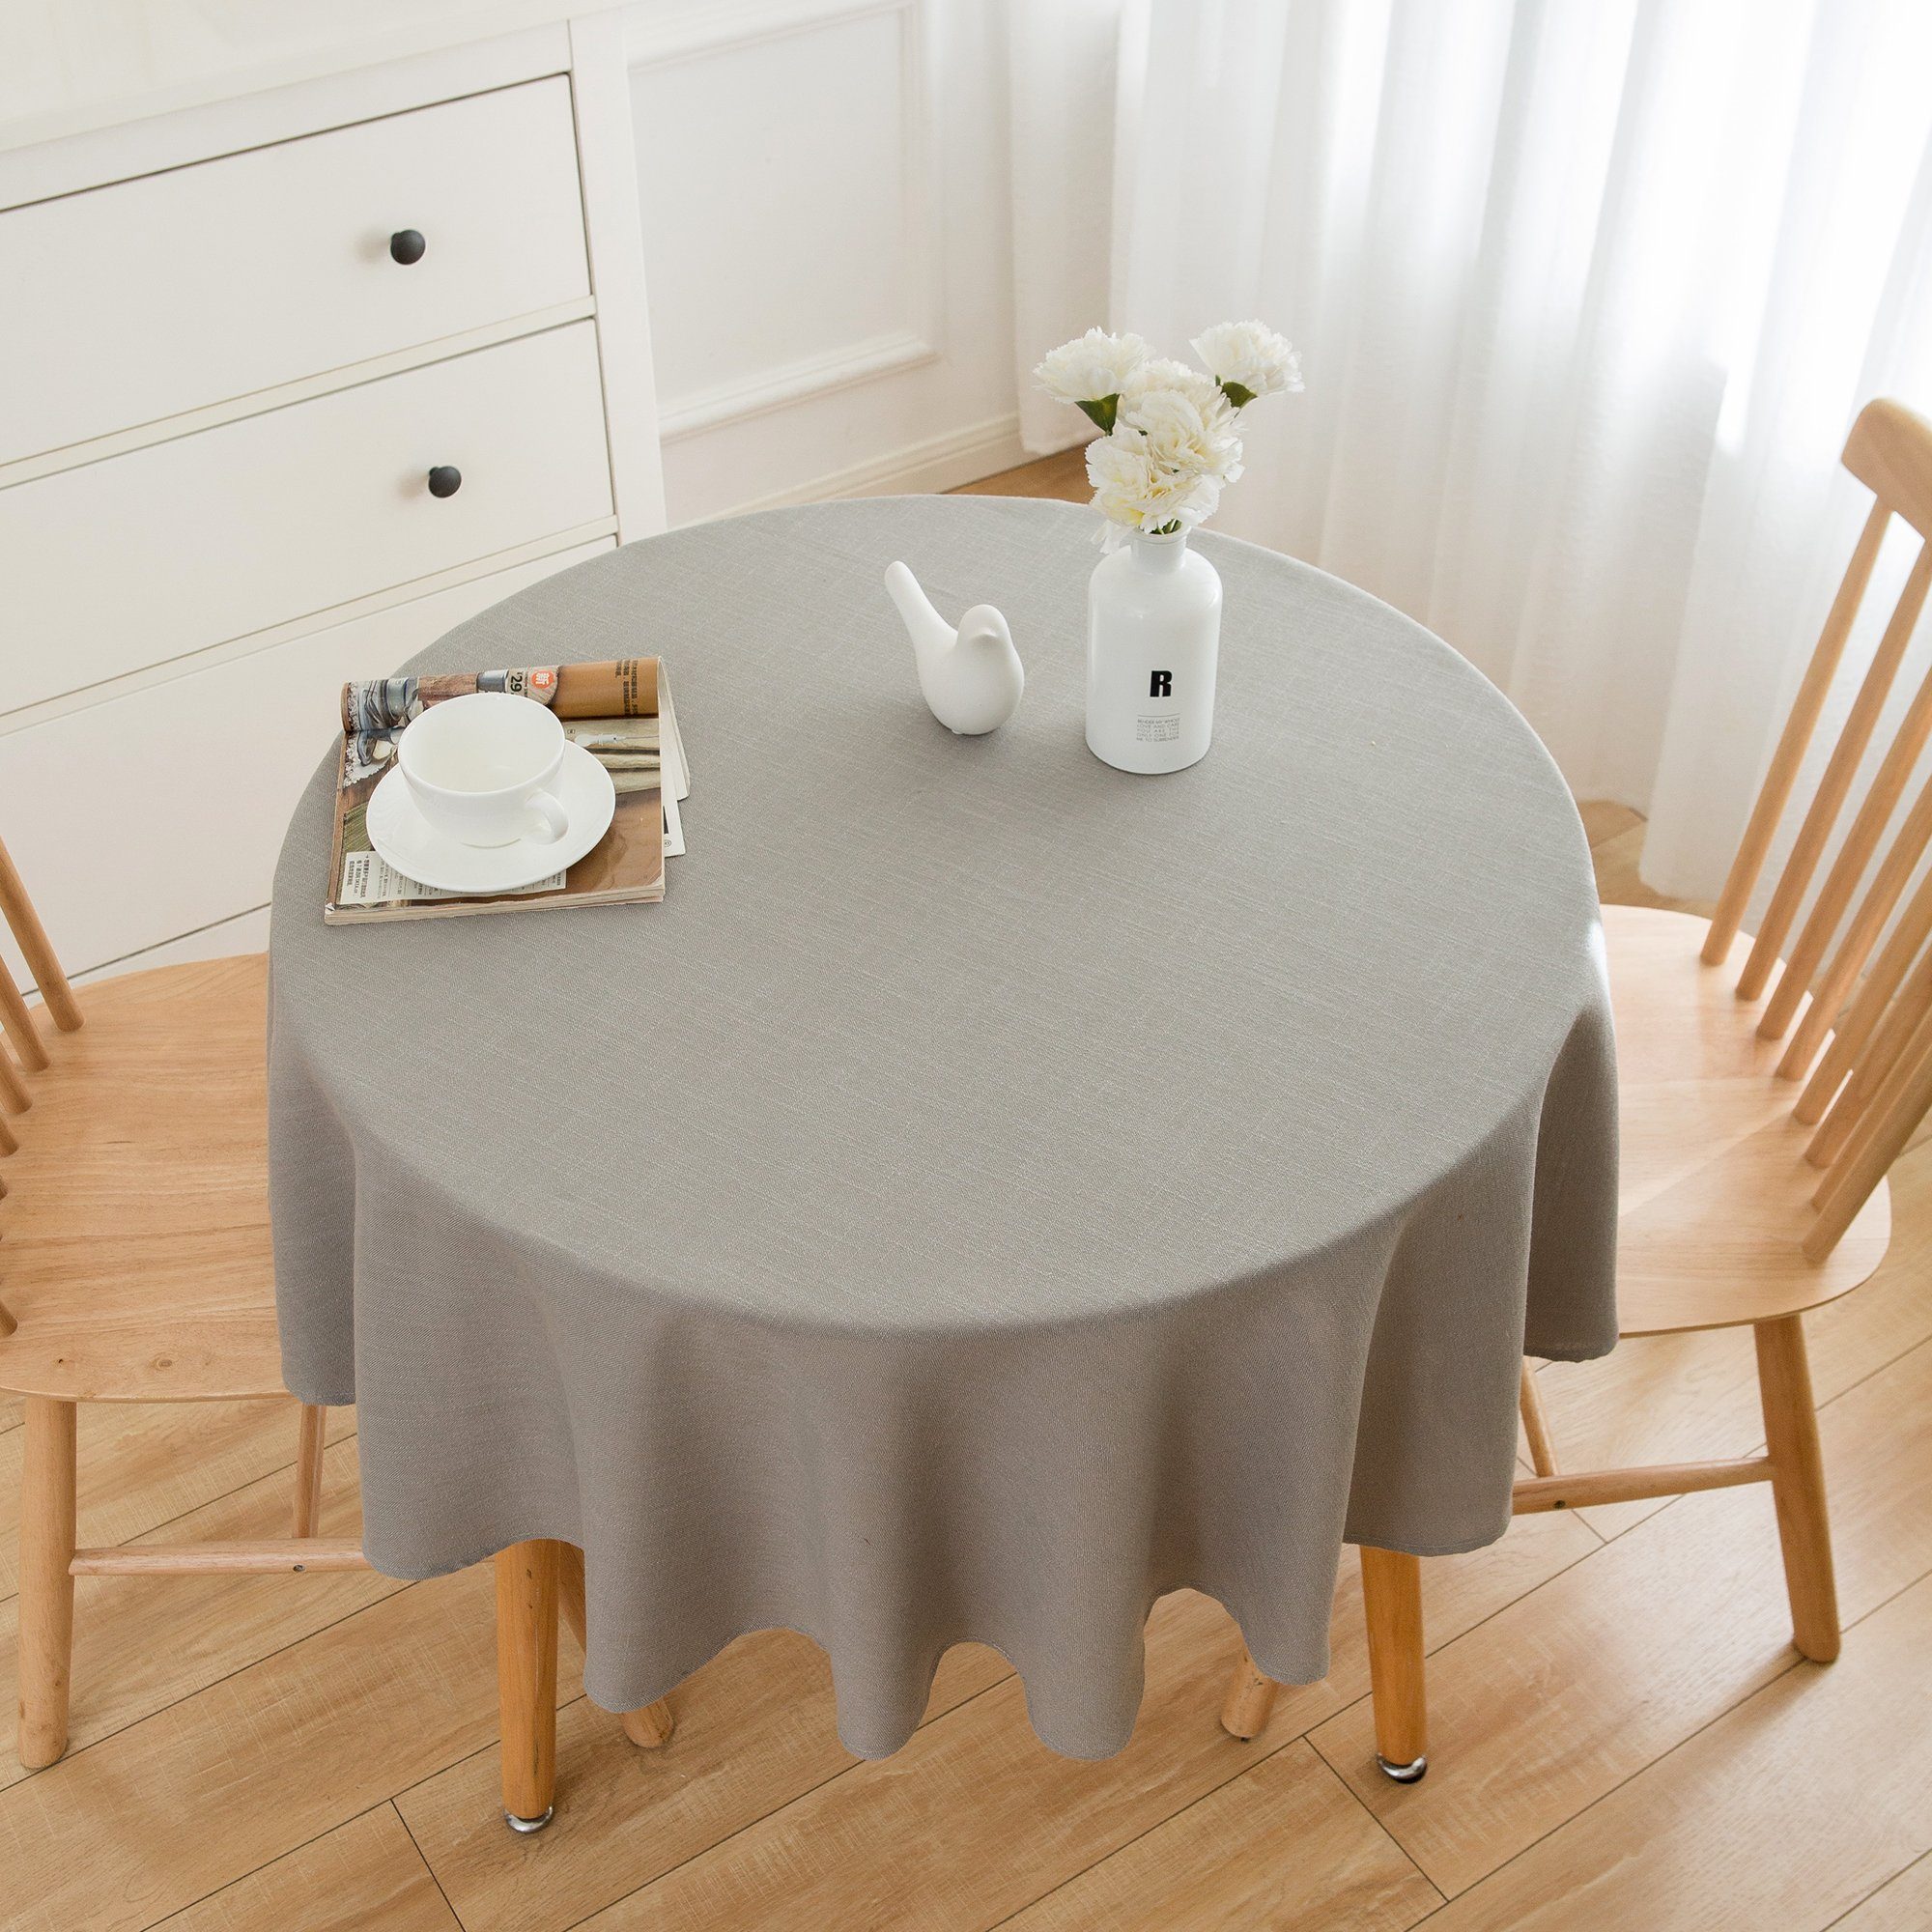 Cloth) & Table (Pflegeleicht Abwaschbar Tischdecken, - fleckenabweisend Hellgrau - Rund Tischdecke Tischtuch Wasserabweisend, Tischdecke Tischdecke Leinenoptik Simurq Lotuseffekt